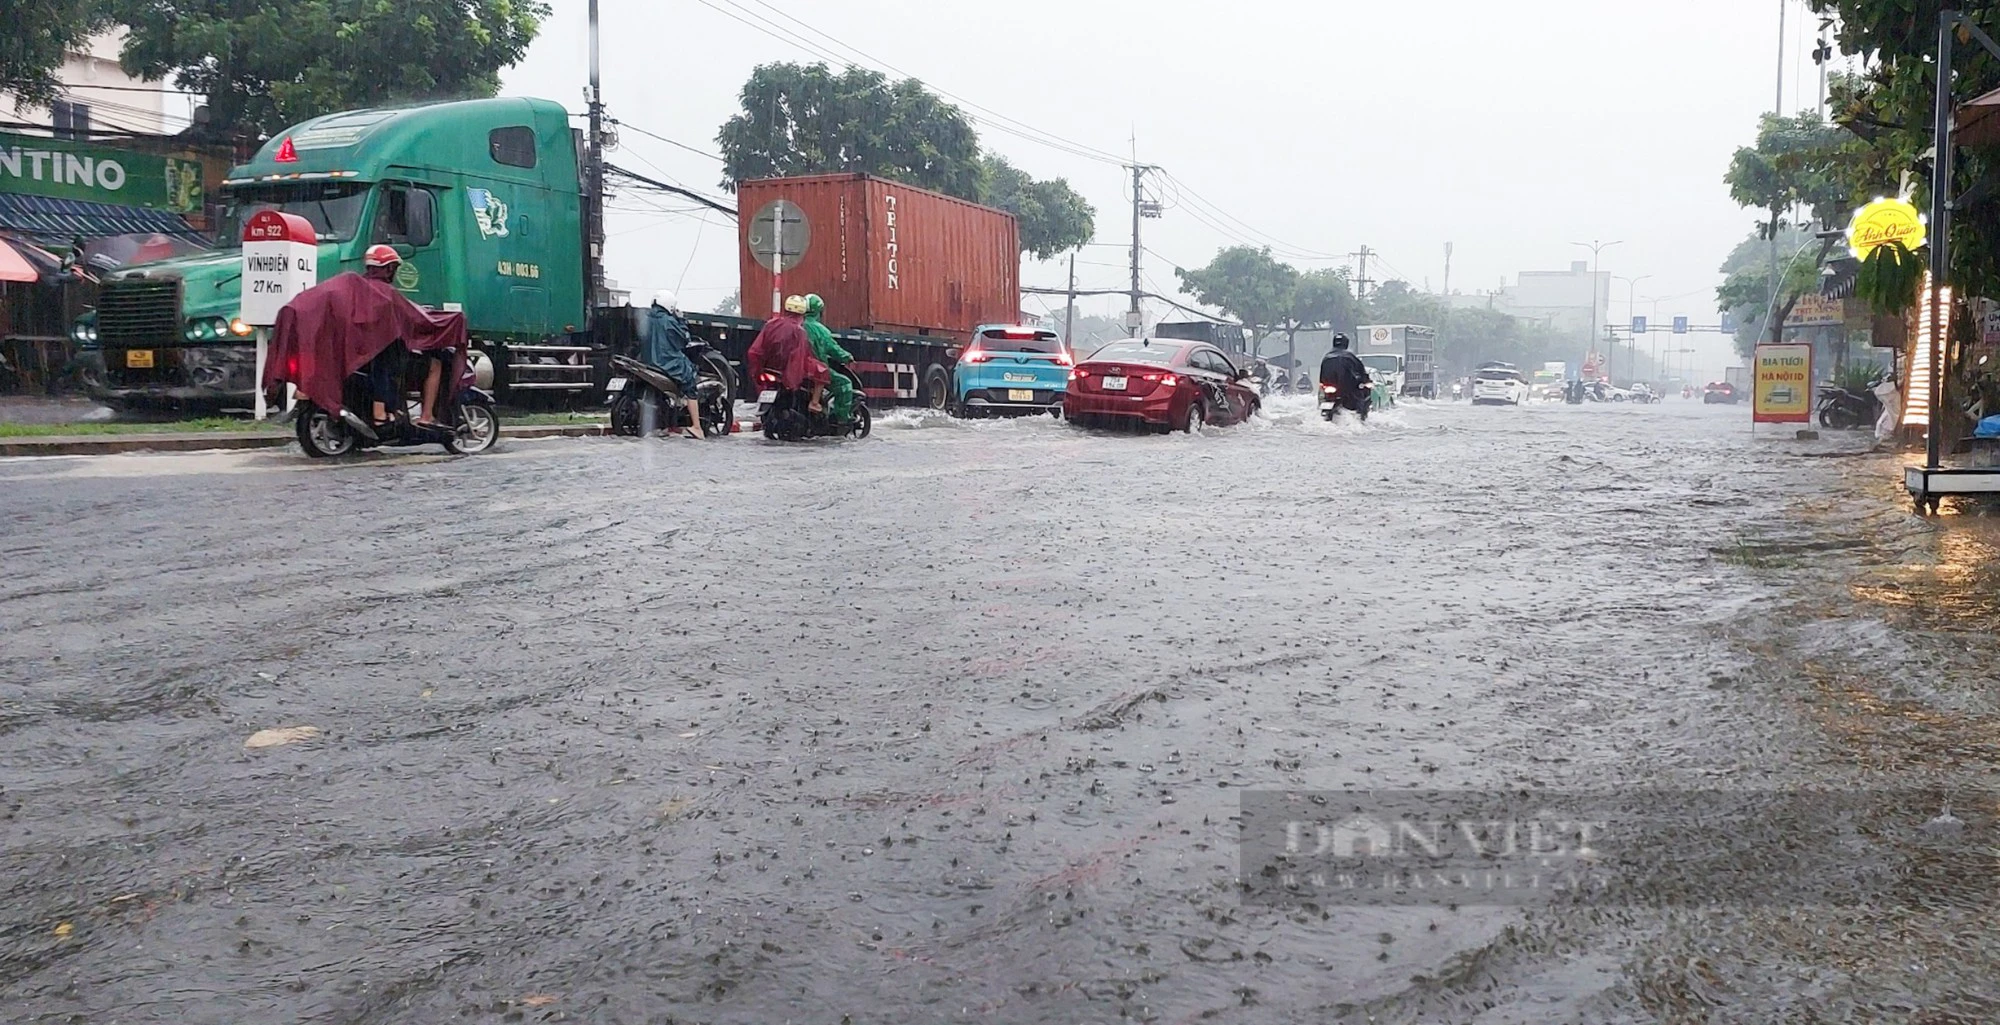 Đường ngập nước lênh láng, người dân chật vật dẫn xe chết máy sau mưa lớn tại Đà Nẵng - Ảnh 1.